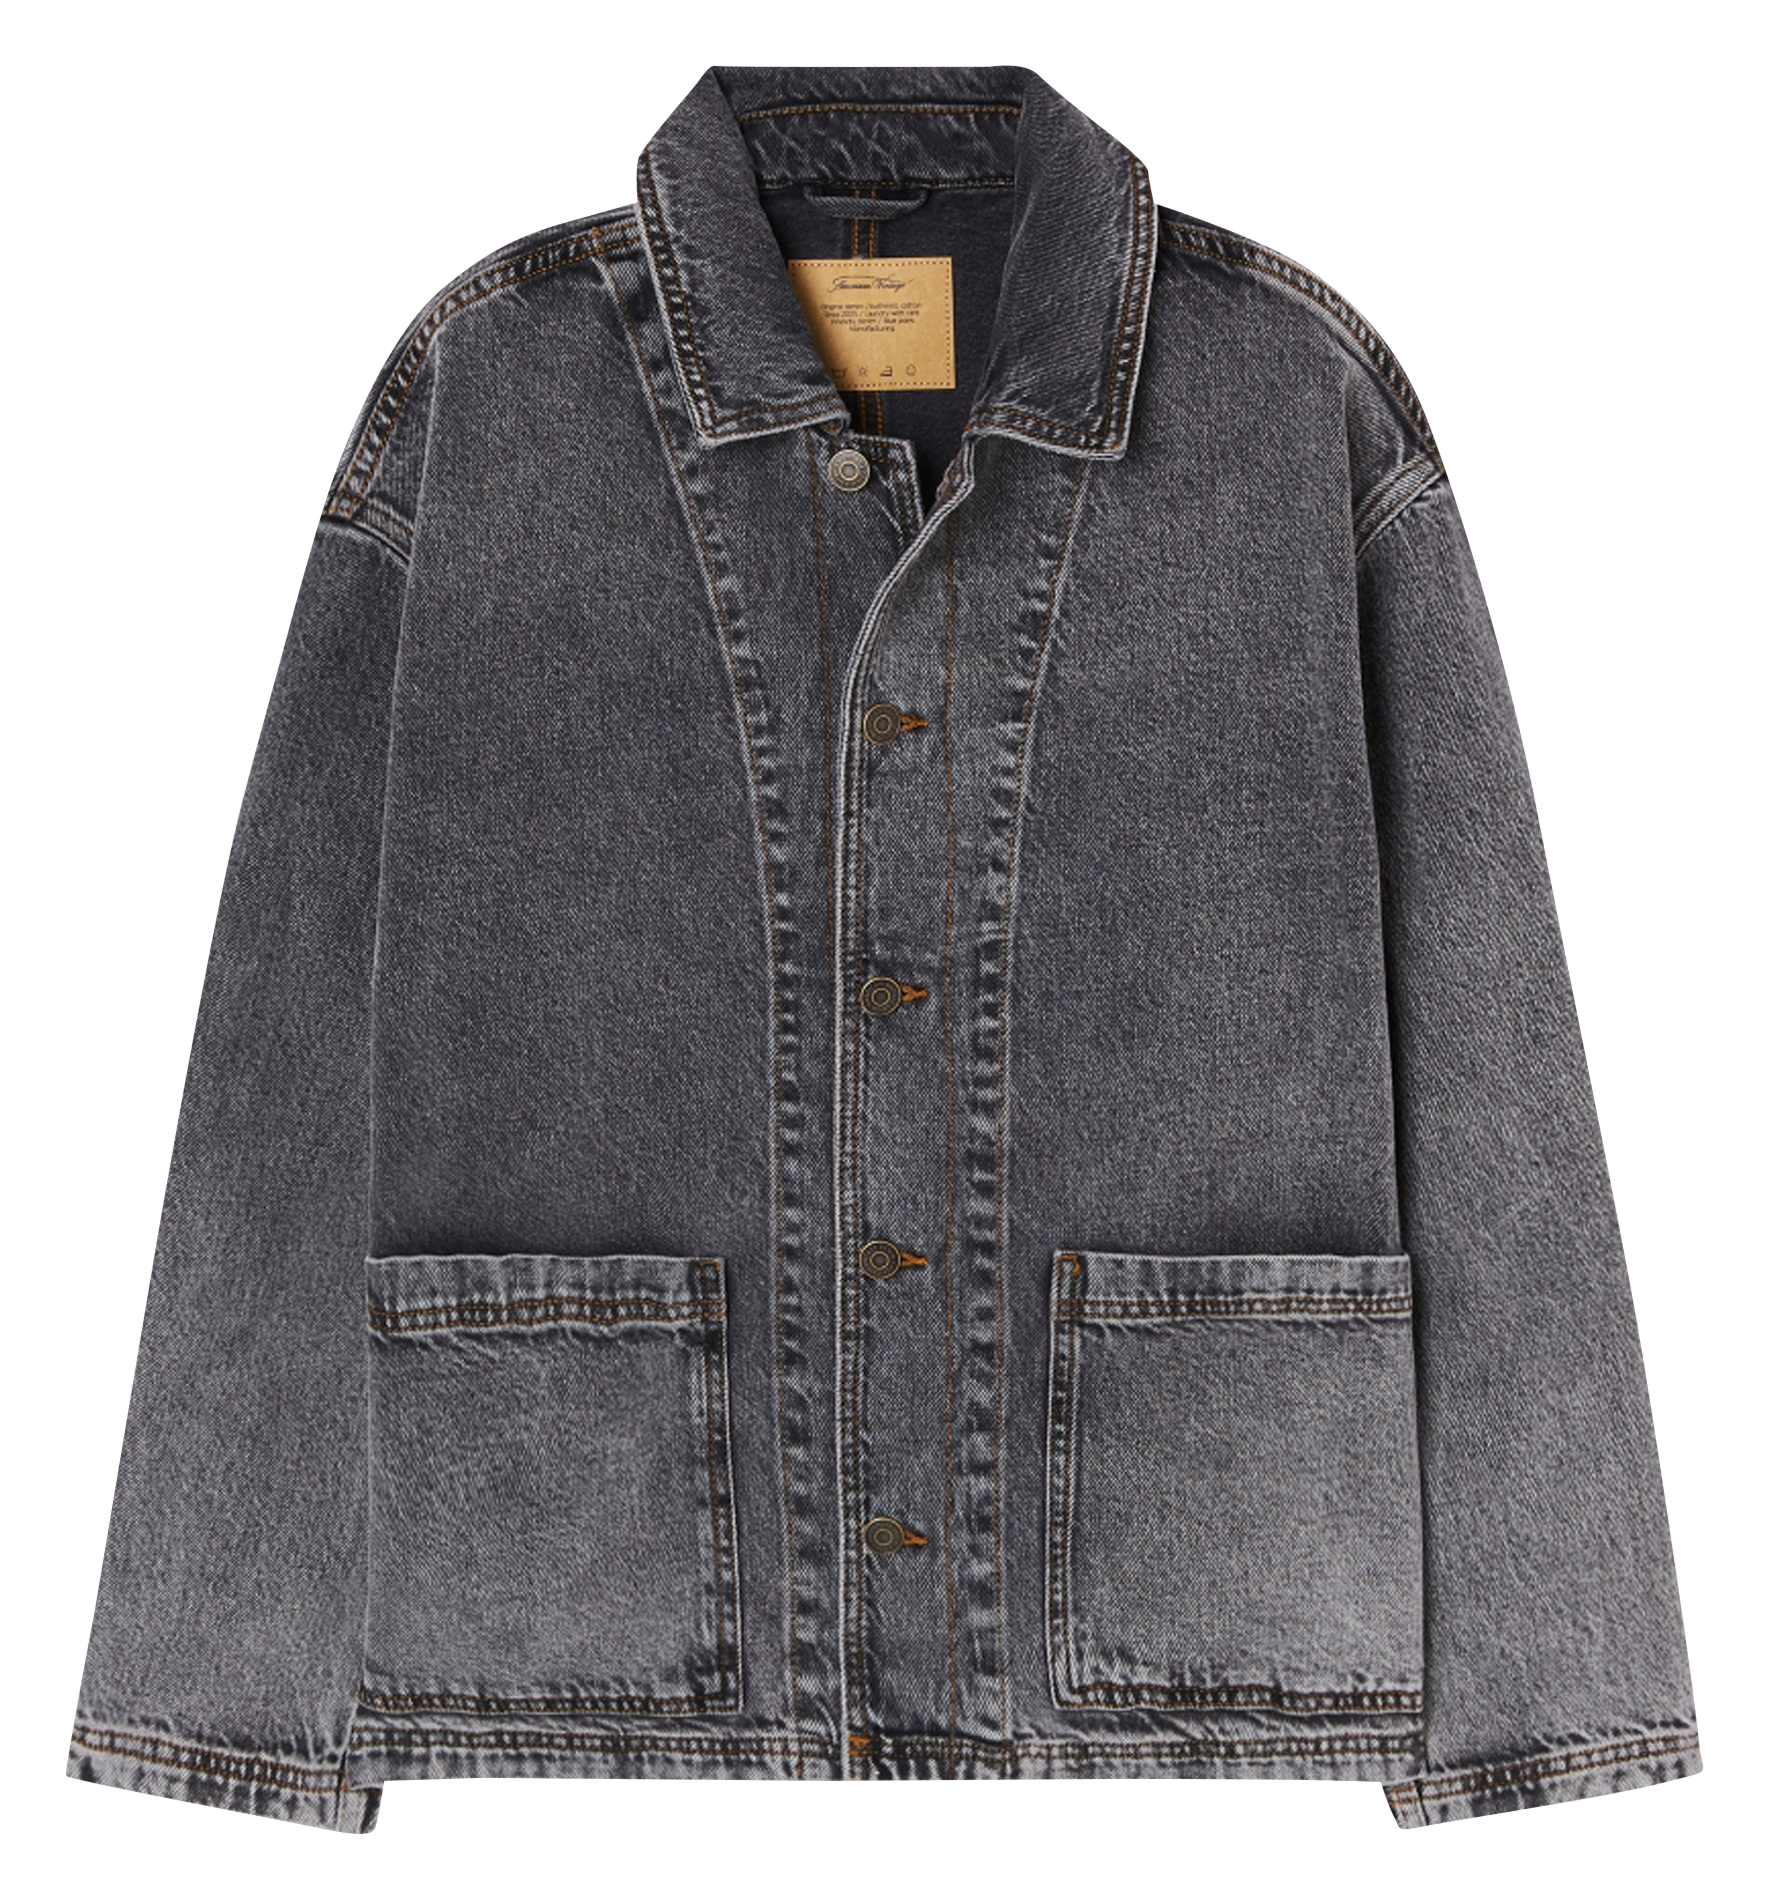 Vintage denim jacket Washed with Tartan Lining (2) – HugNottingHill